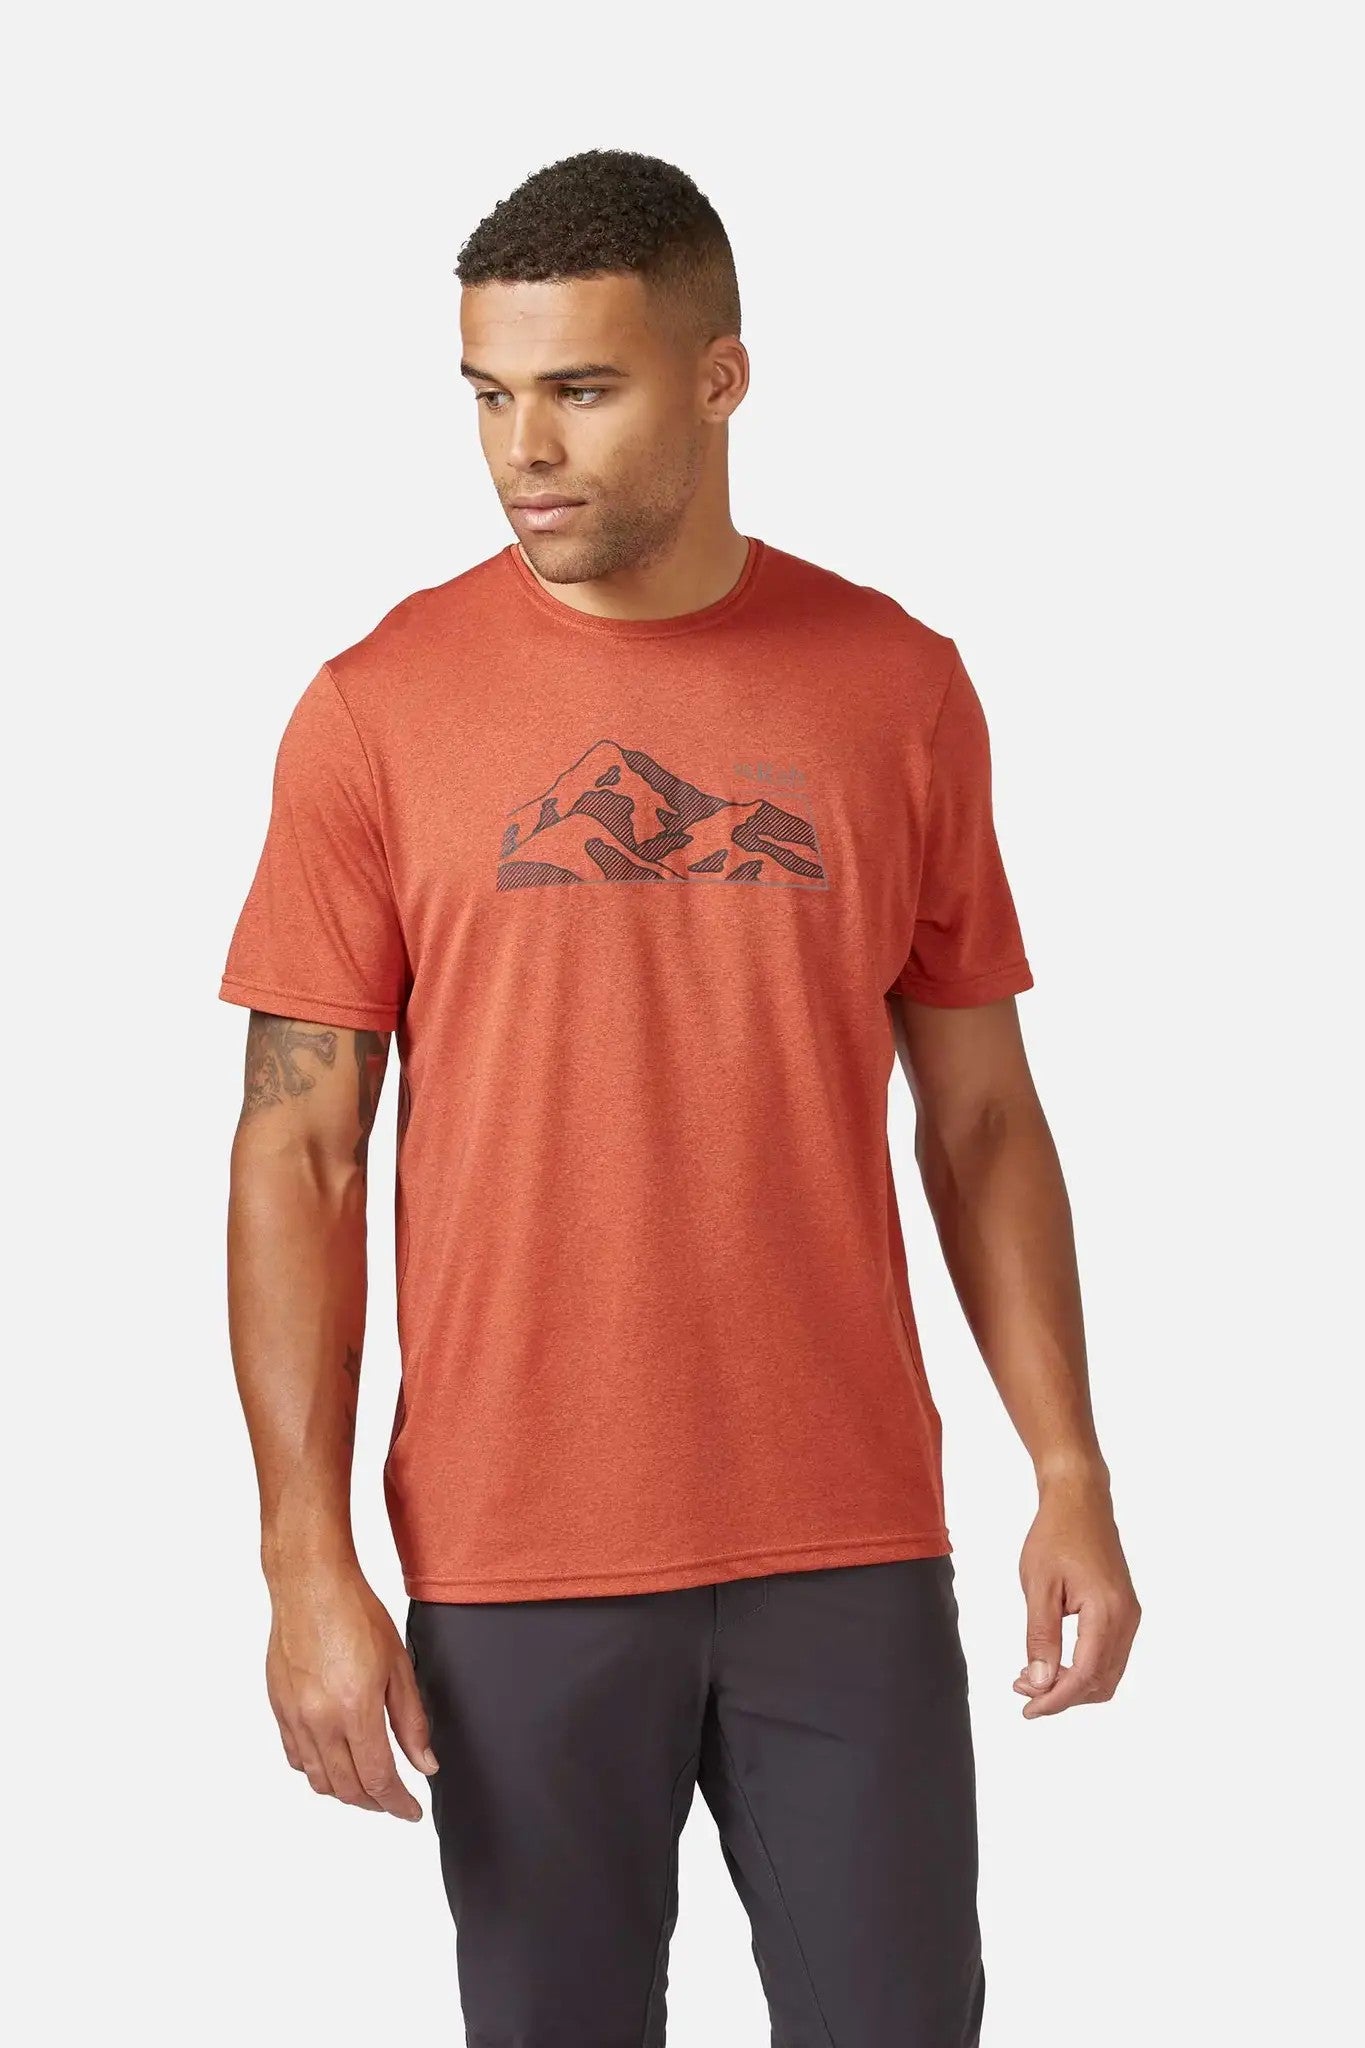 【英國 RAB】Mantle Mountain Tee 透氣短袖有機棉T恤 男款 紅土 #QBL58